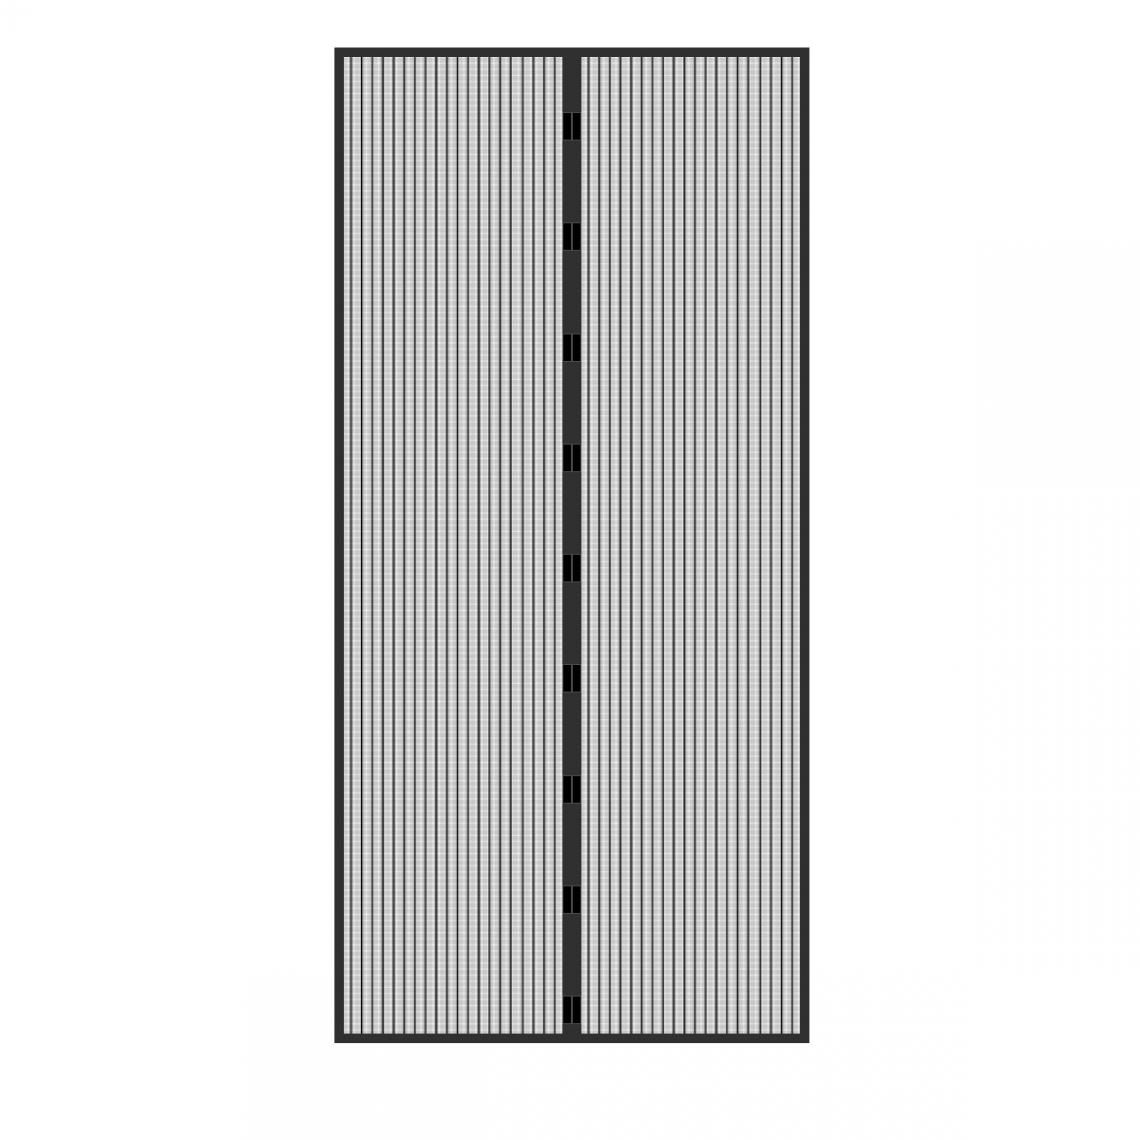 Ecd Germany - Rideau de porte protection contre insectes fermeture magnétique 100x210cm noir - Moustiquaire Fenêtre